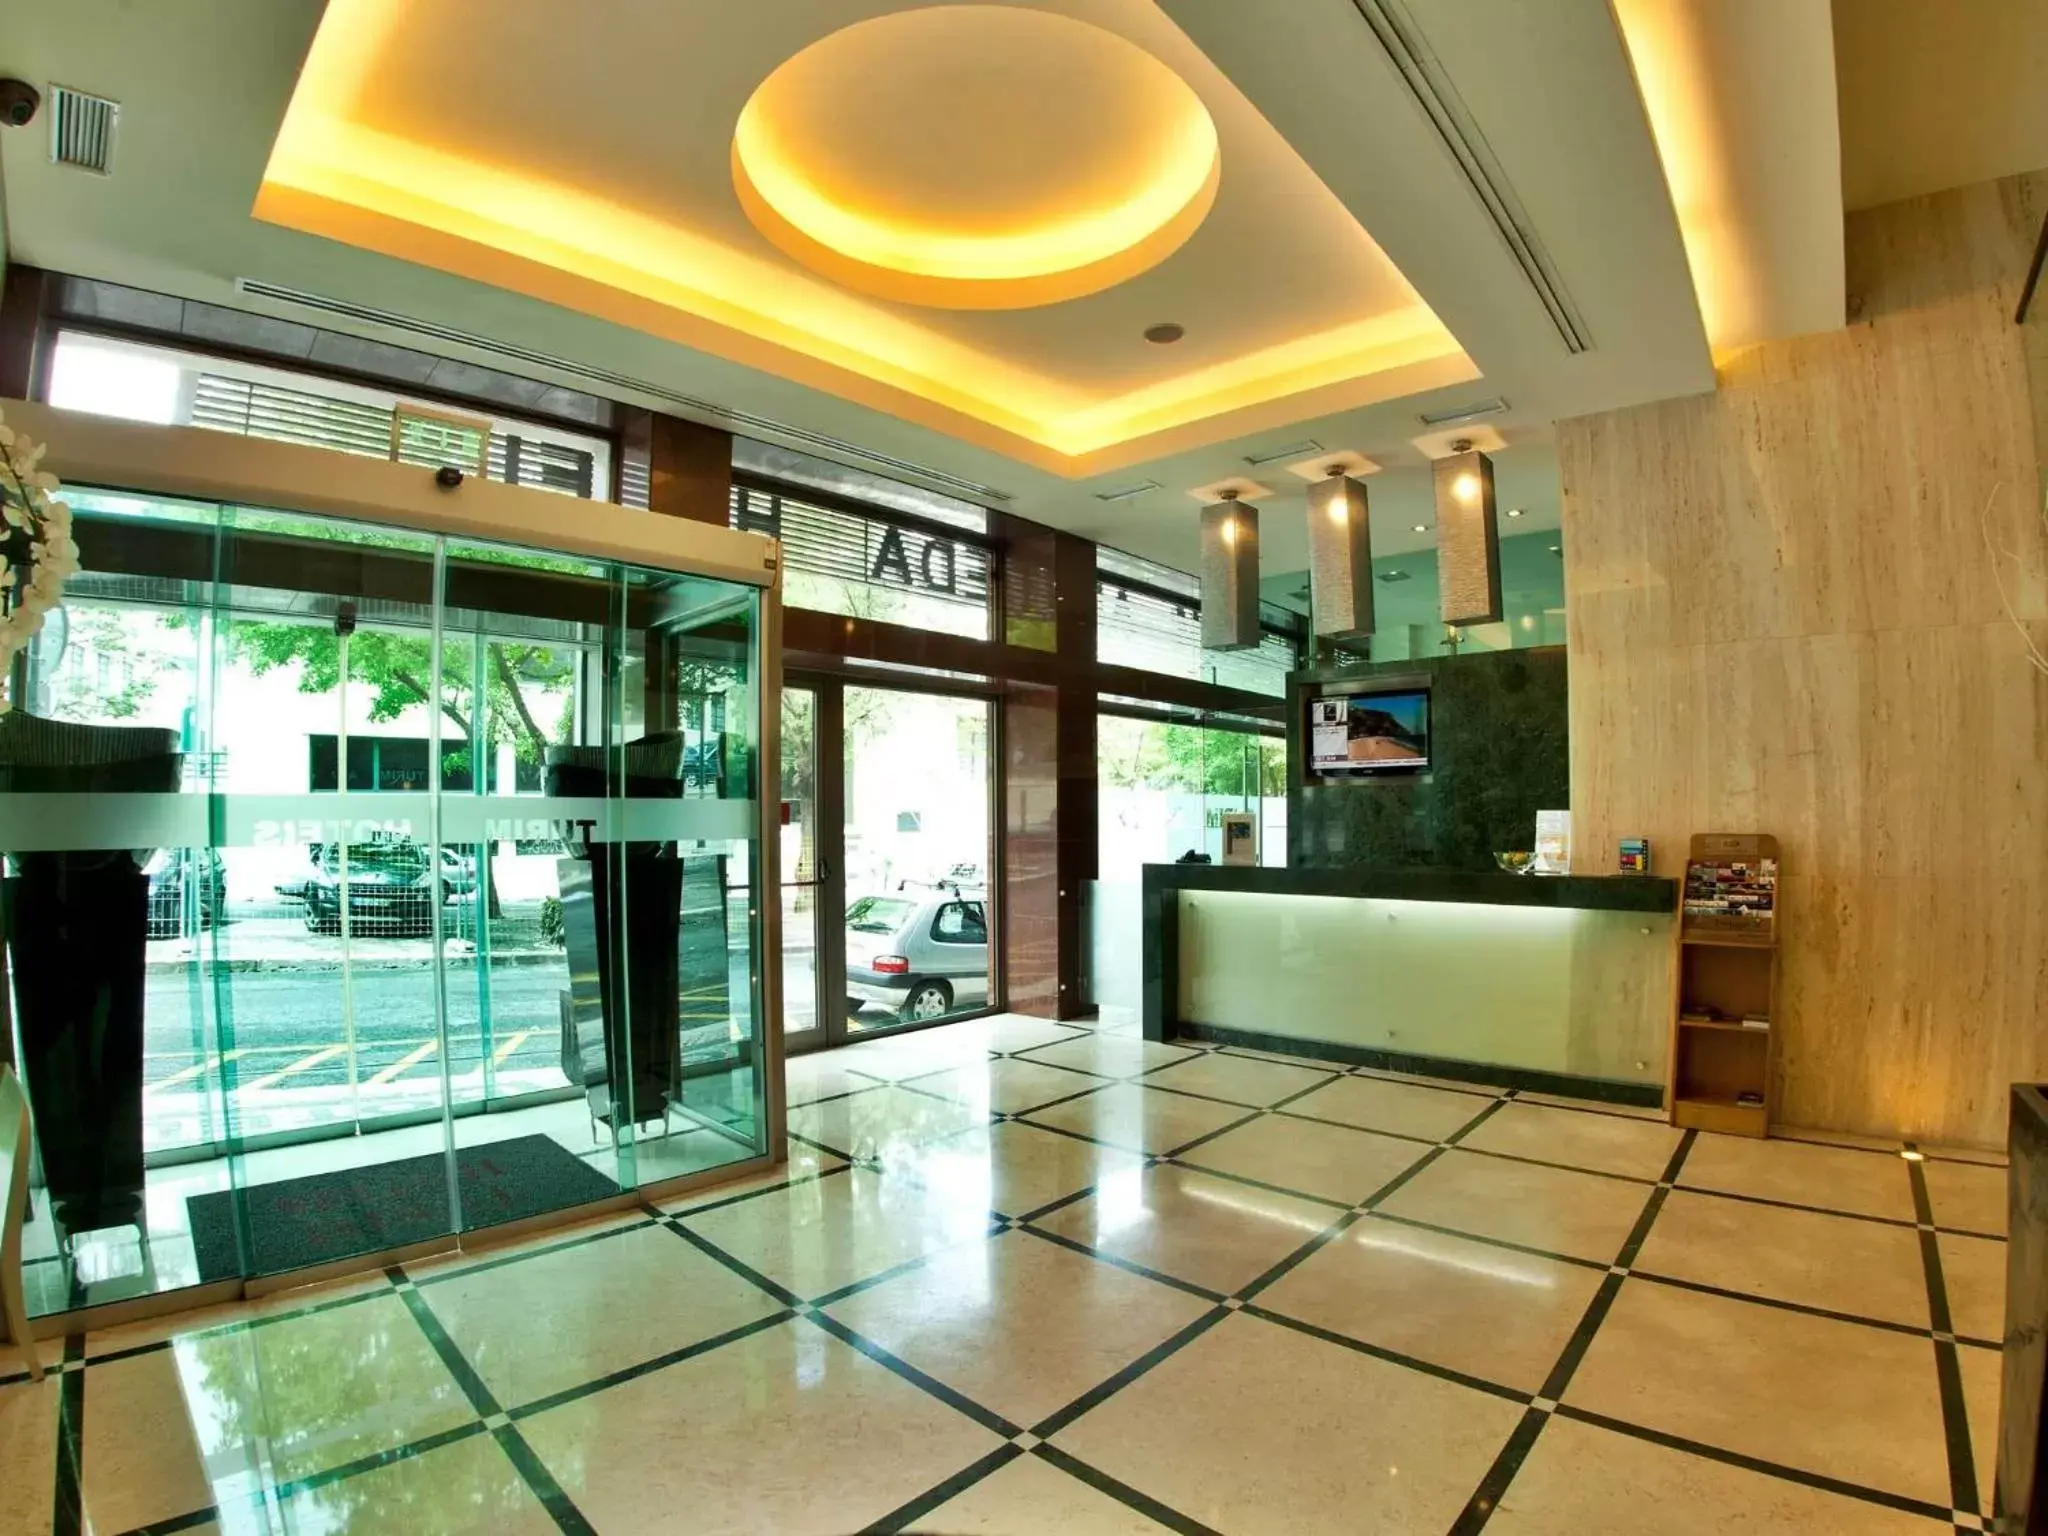 Lobby or reception in TURIM Alameda Hotel